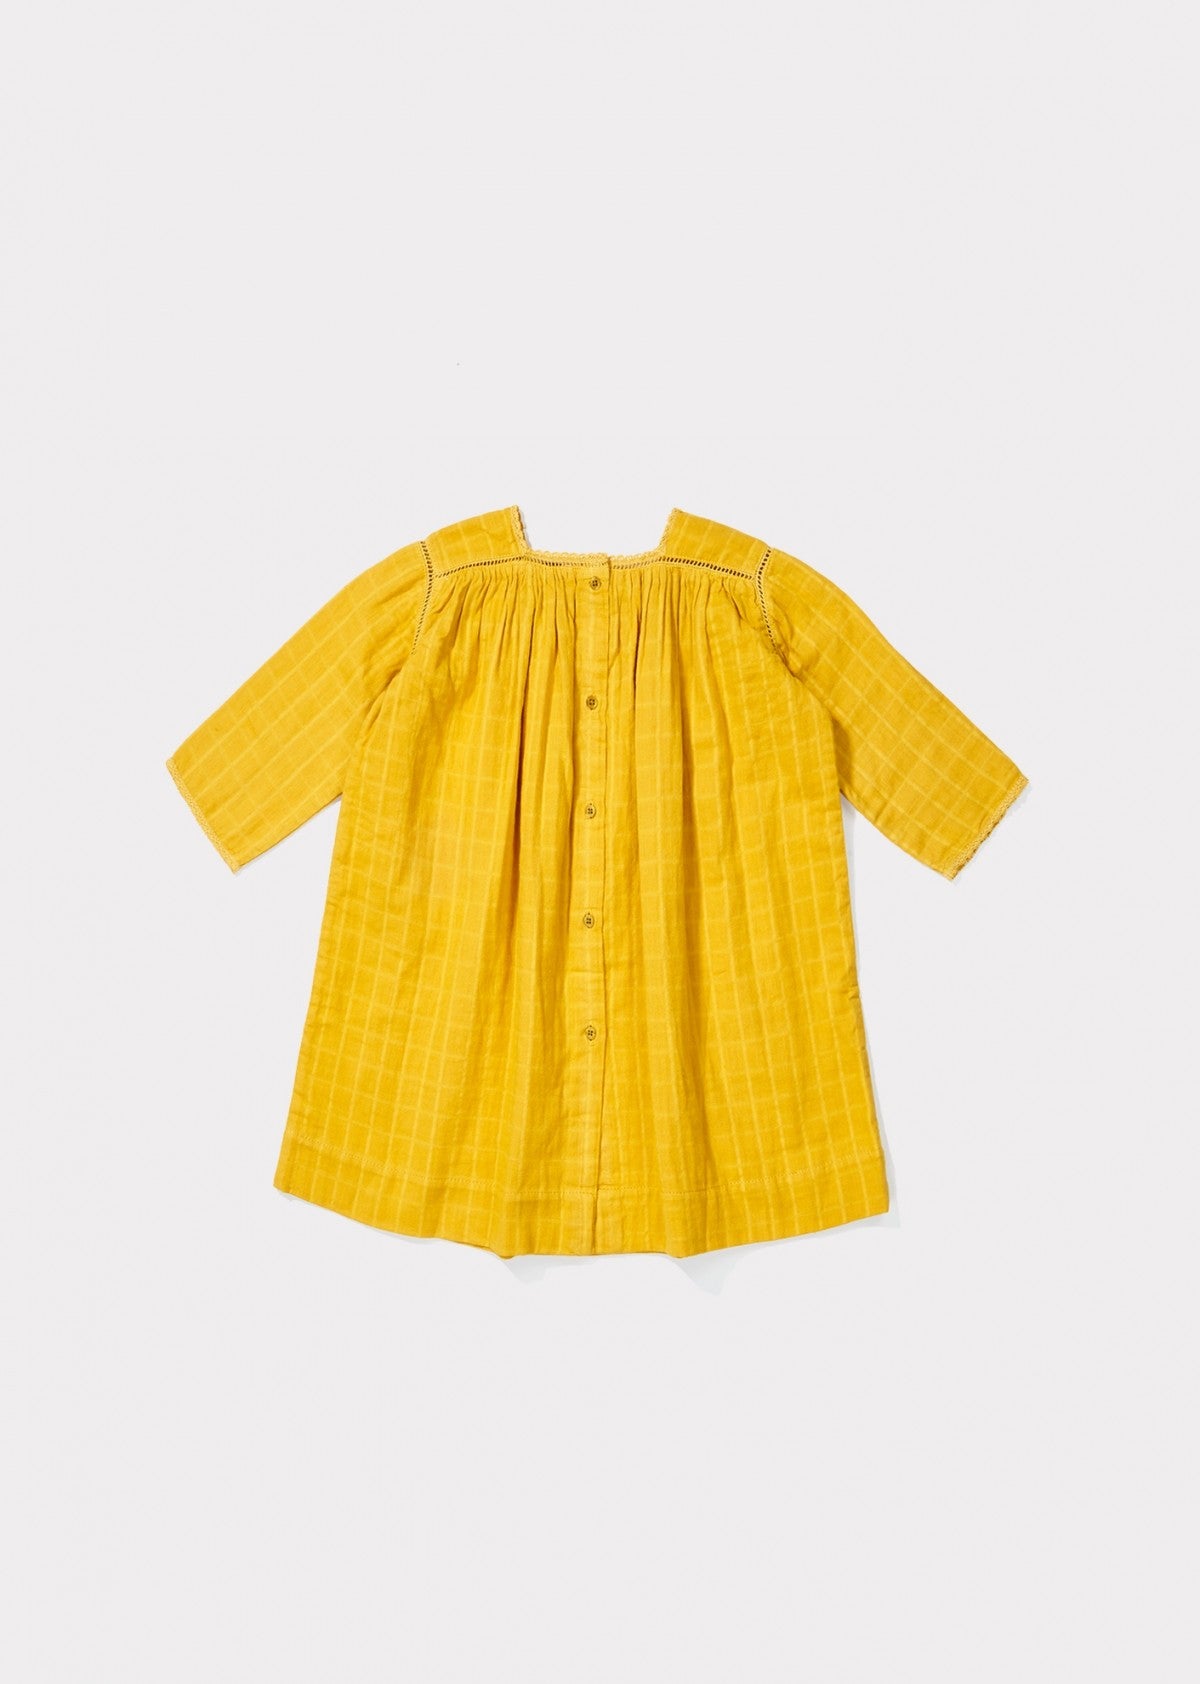 Baby Girls Yellow Cotton Dress